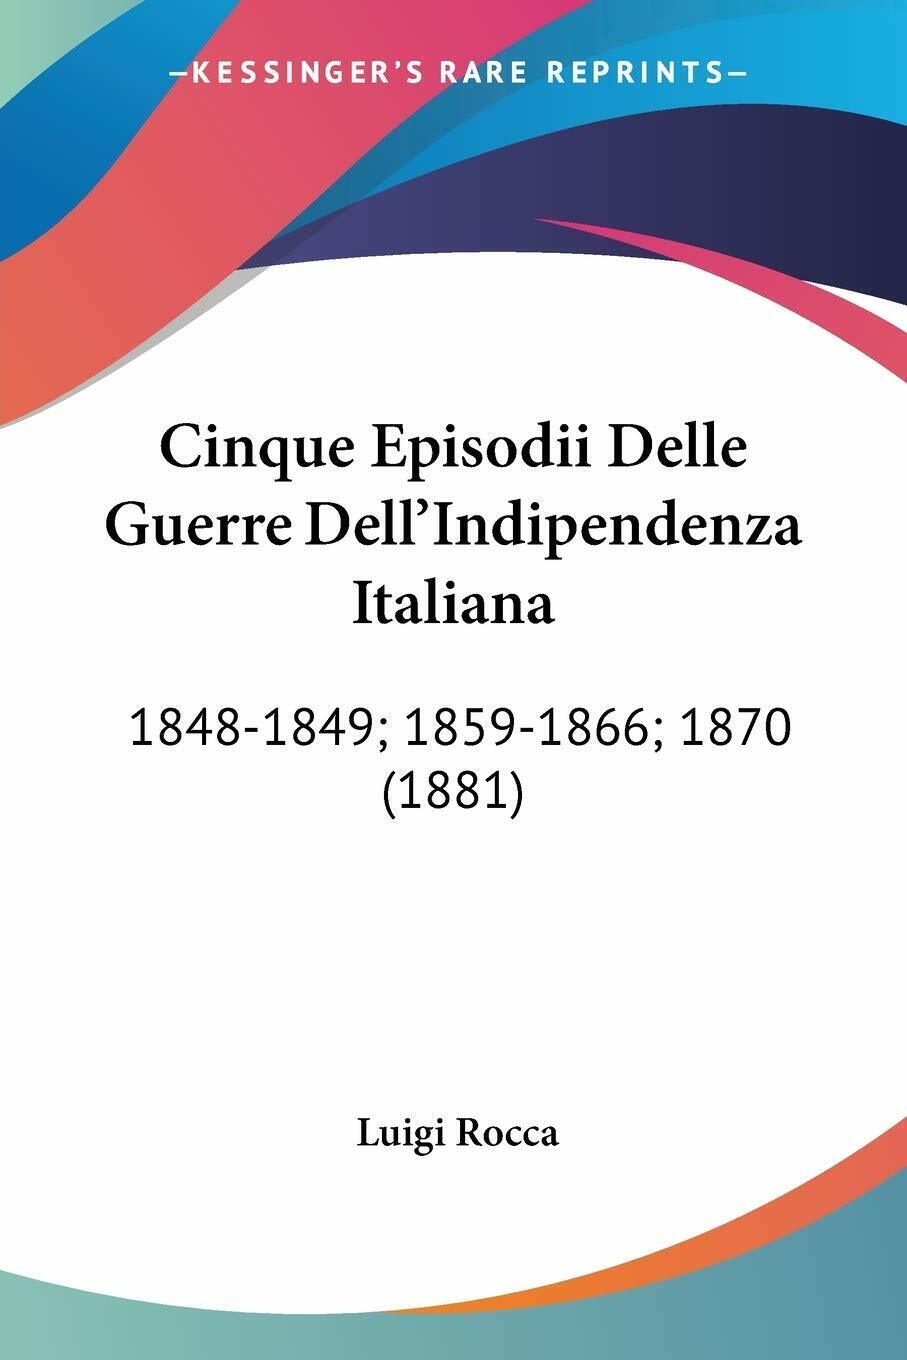 Cinque Episodii Delle Guerre DelL'indipendenza Italiana: 1848-1849; 1859-1866; 1